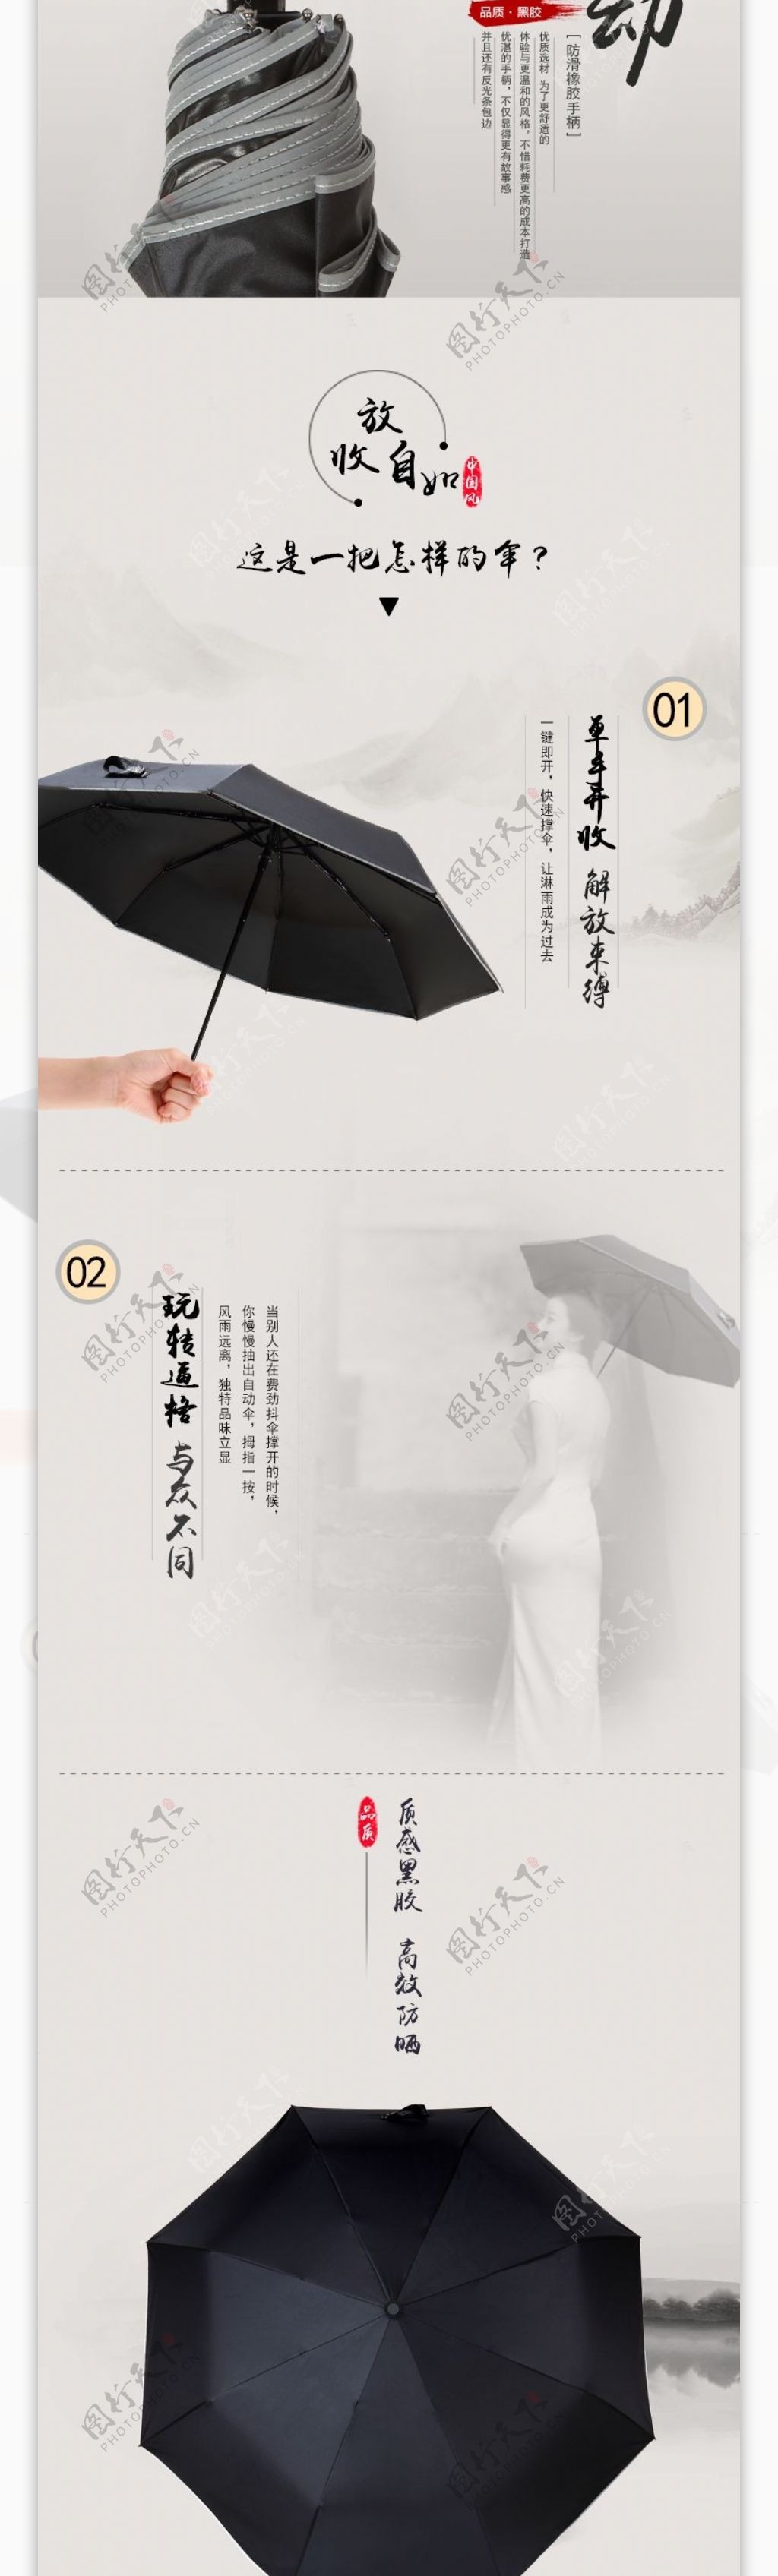 全自动雨伞详情素材下载中国风